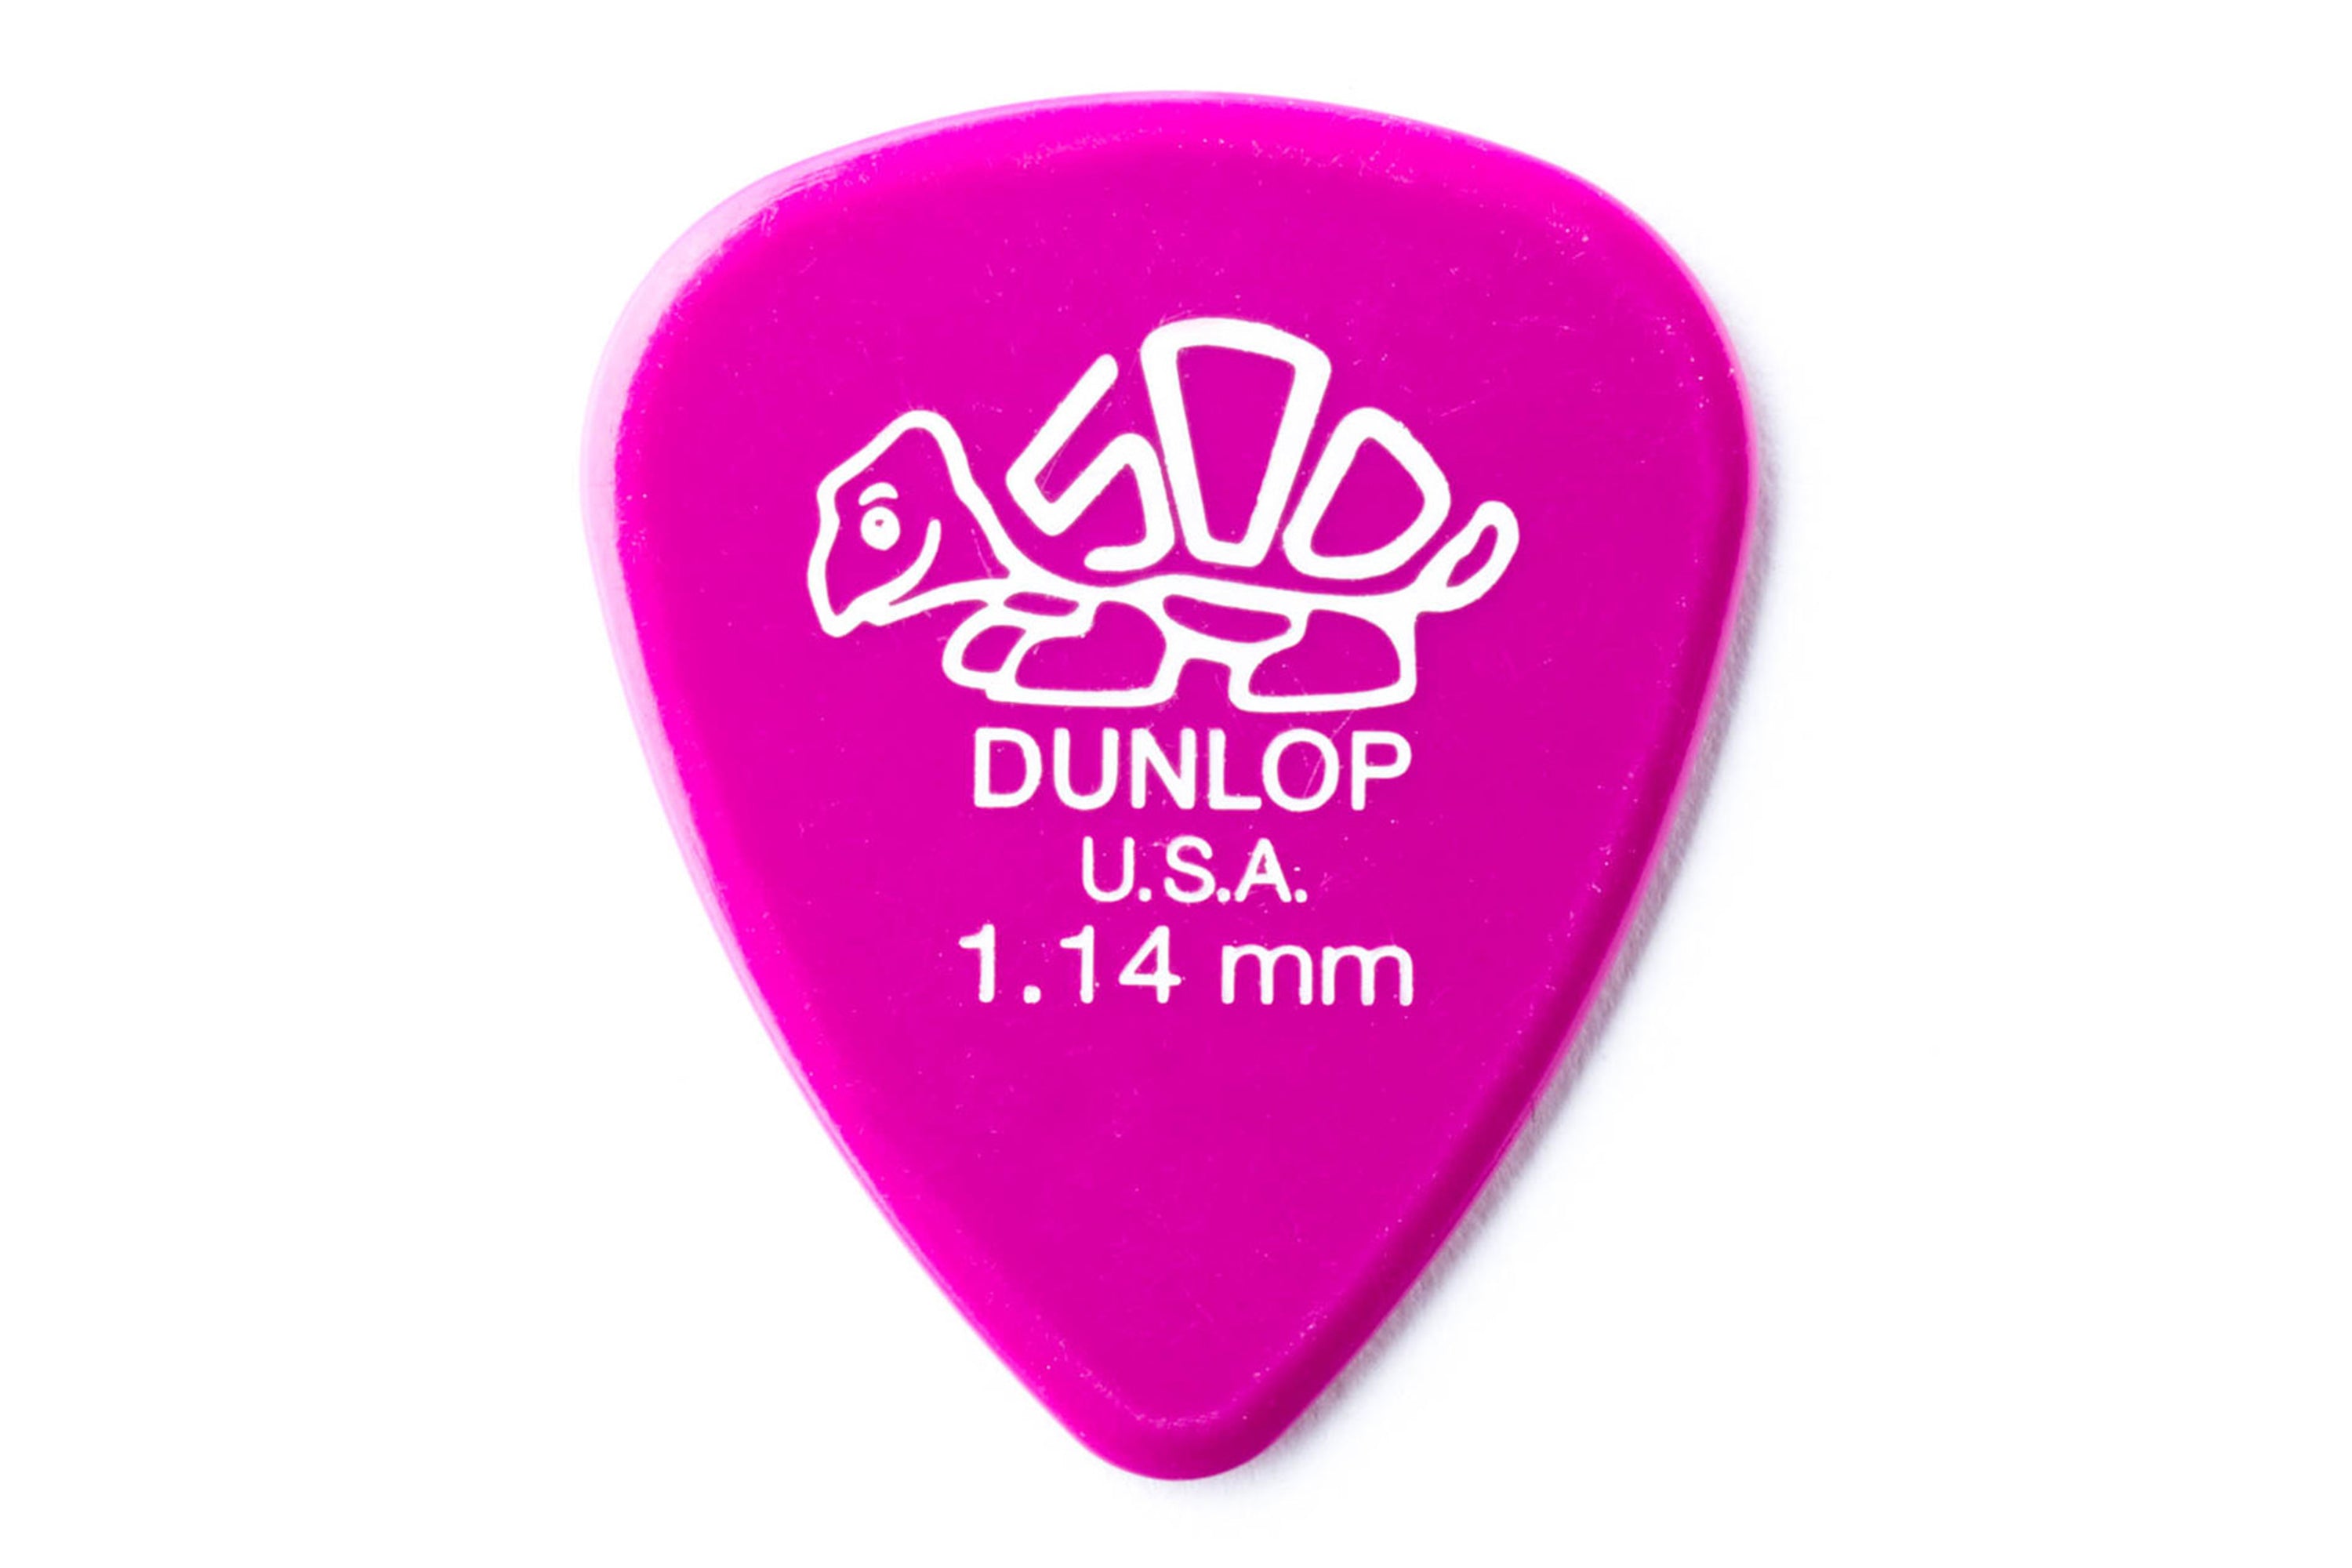 Dunlop Delrin 500 Standard 1.14mm Magenta Guitar & Ukulele Pick - SINGLE PICK